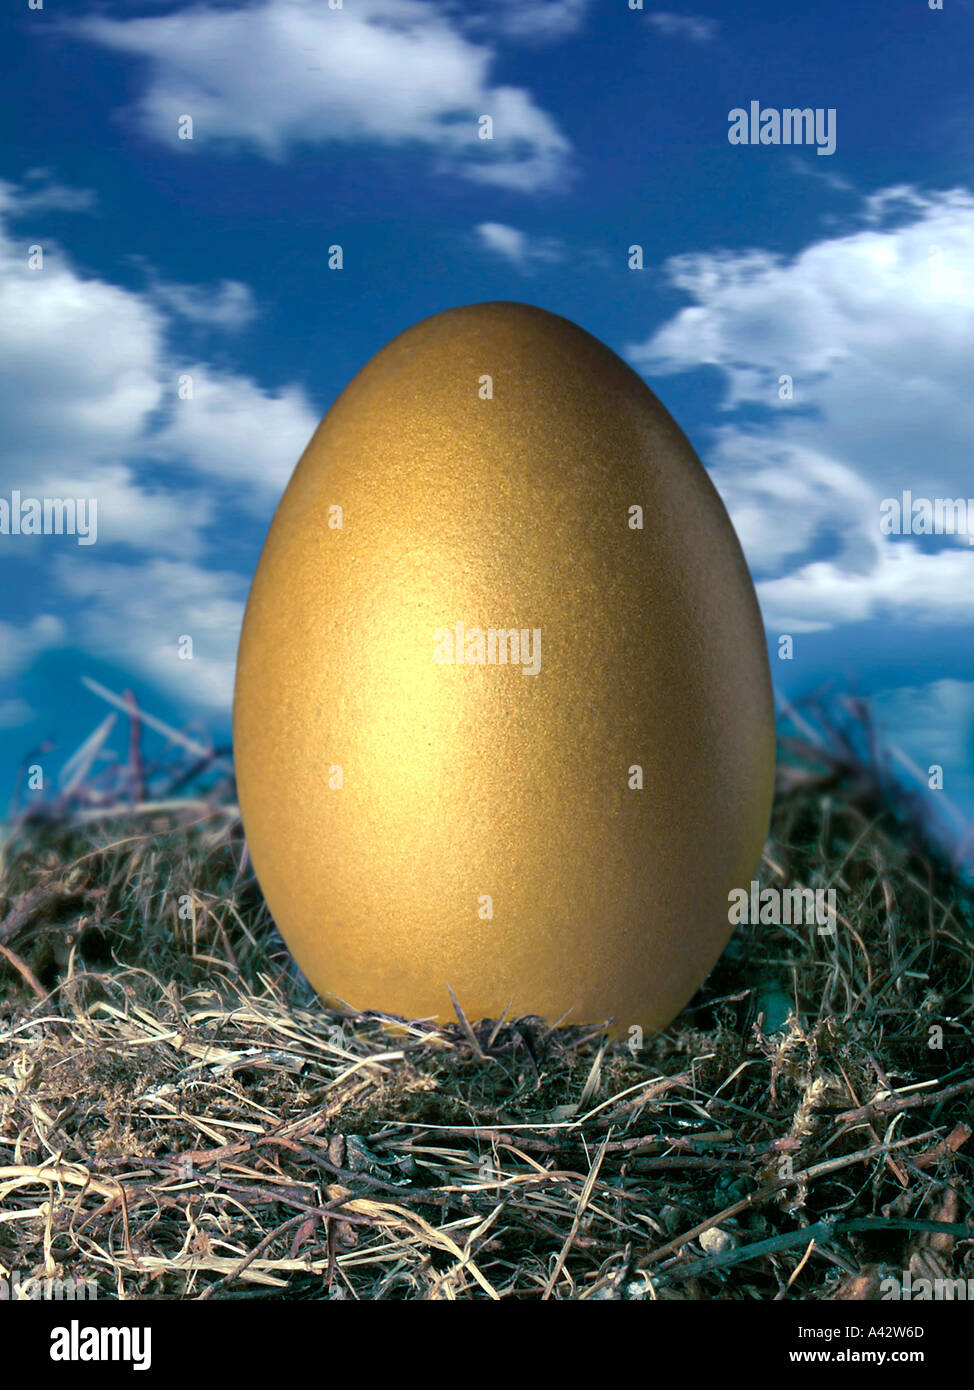 Golden Egg nel nido in background nuvole Goldenes Ei im Nest im Hintergrund Wolken Foto Stock